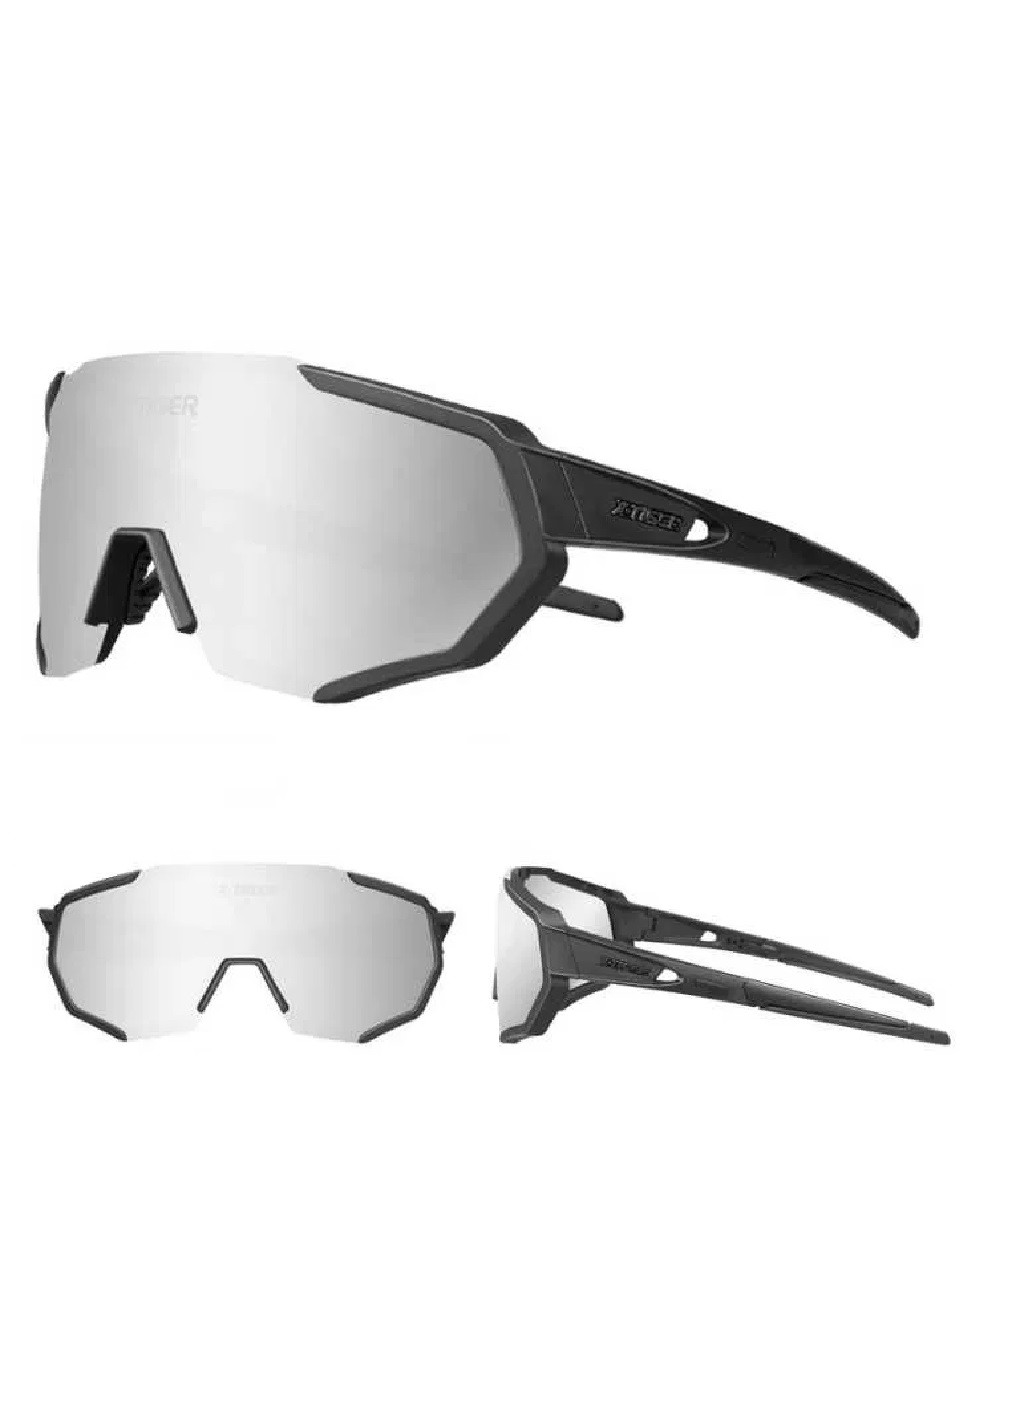 Спортивные вело очки с поляризацией диоптрии 3 сменные линзы чехол дужки салфетка в комплекте (474099-Prob) Unbranded (257340029)